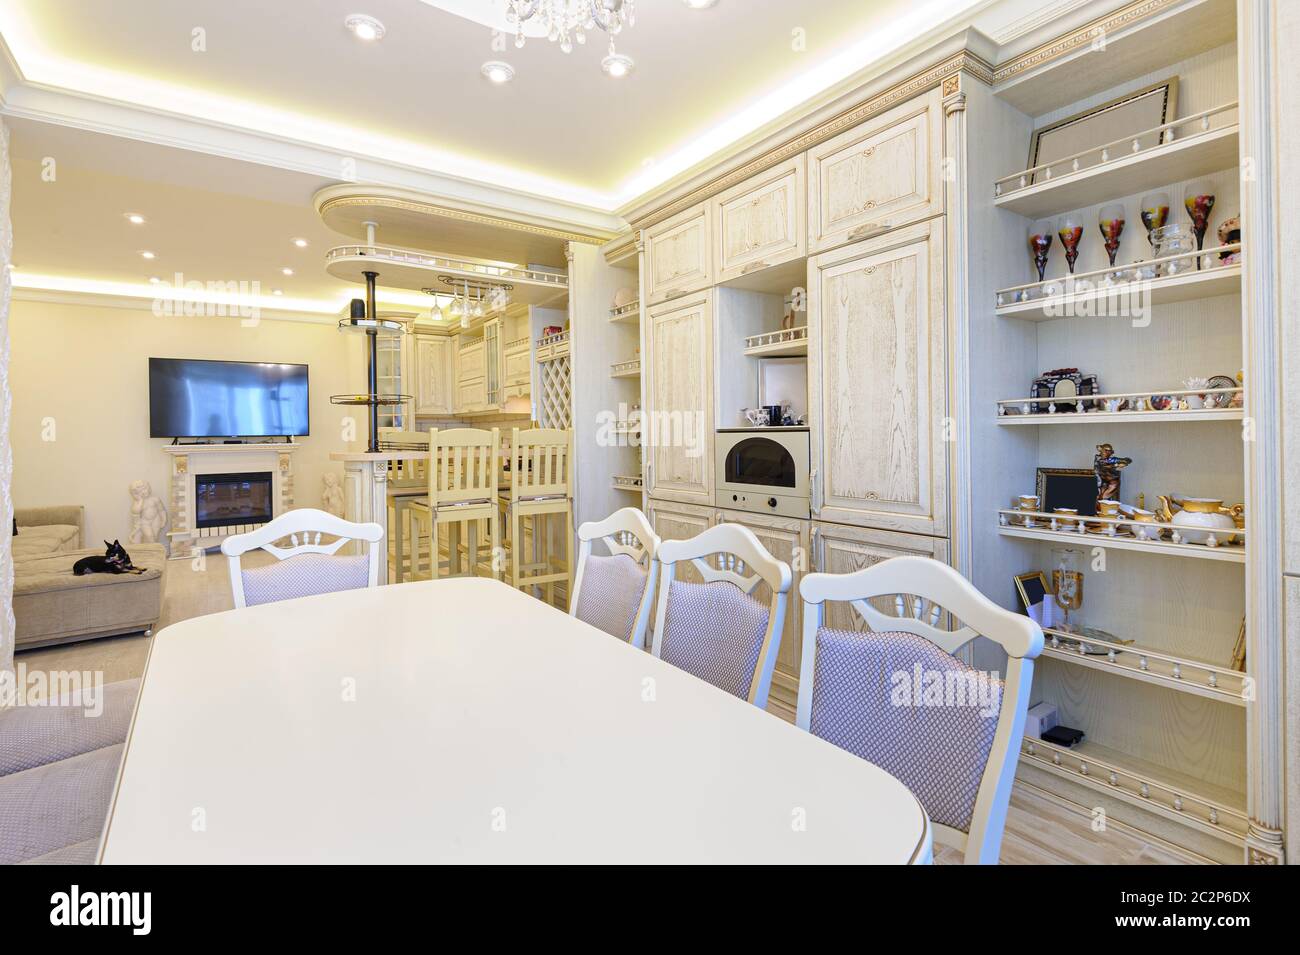 Luxury modern beige kitchen interior Stock Photo